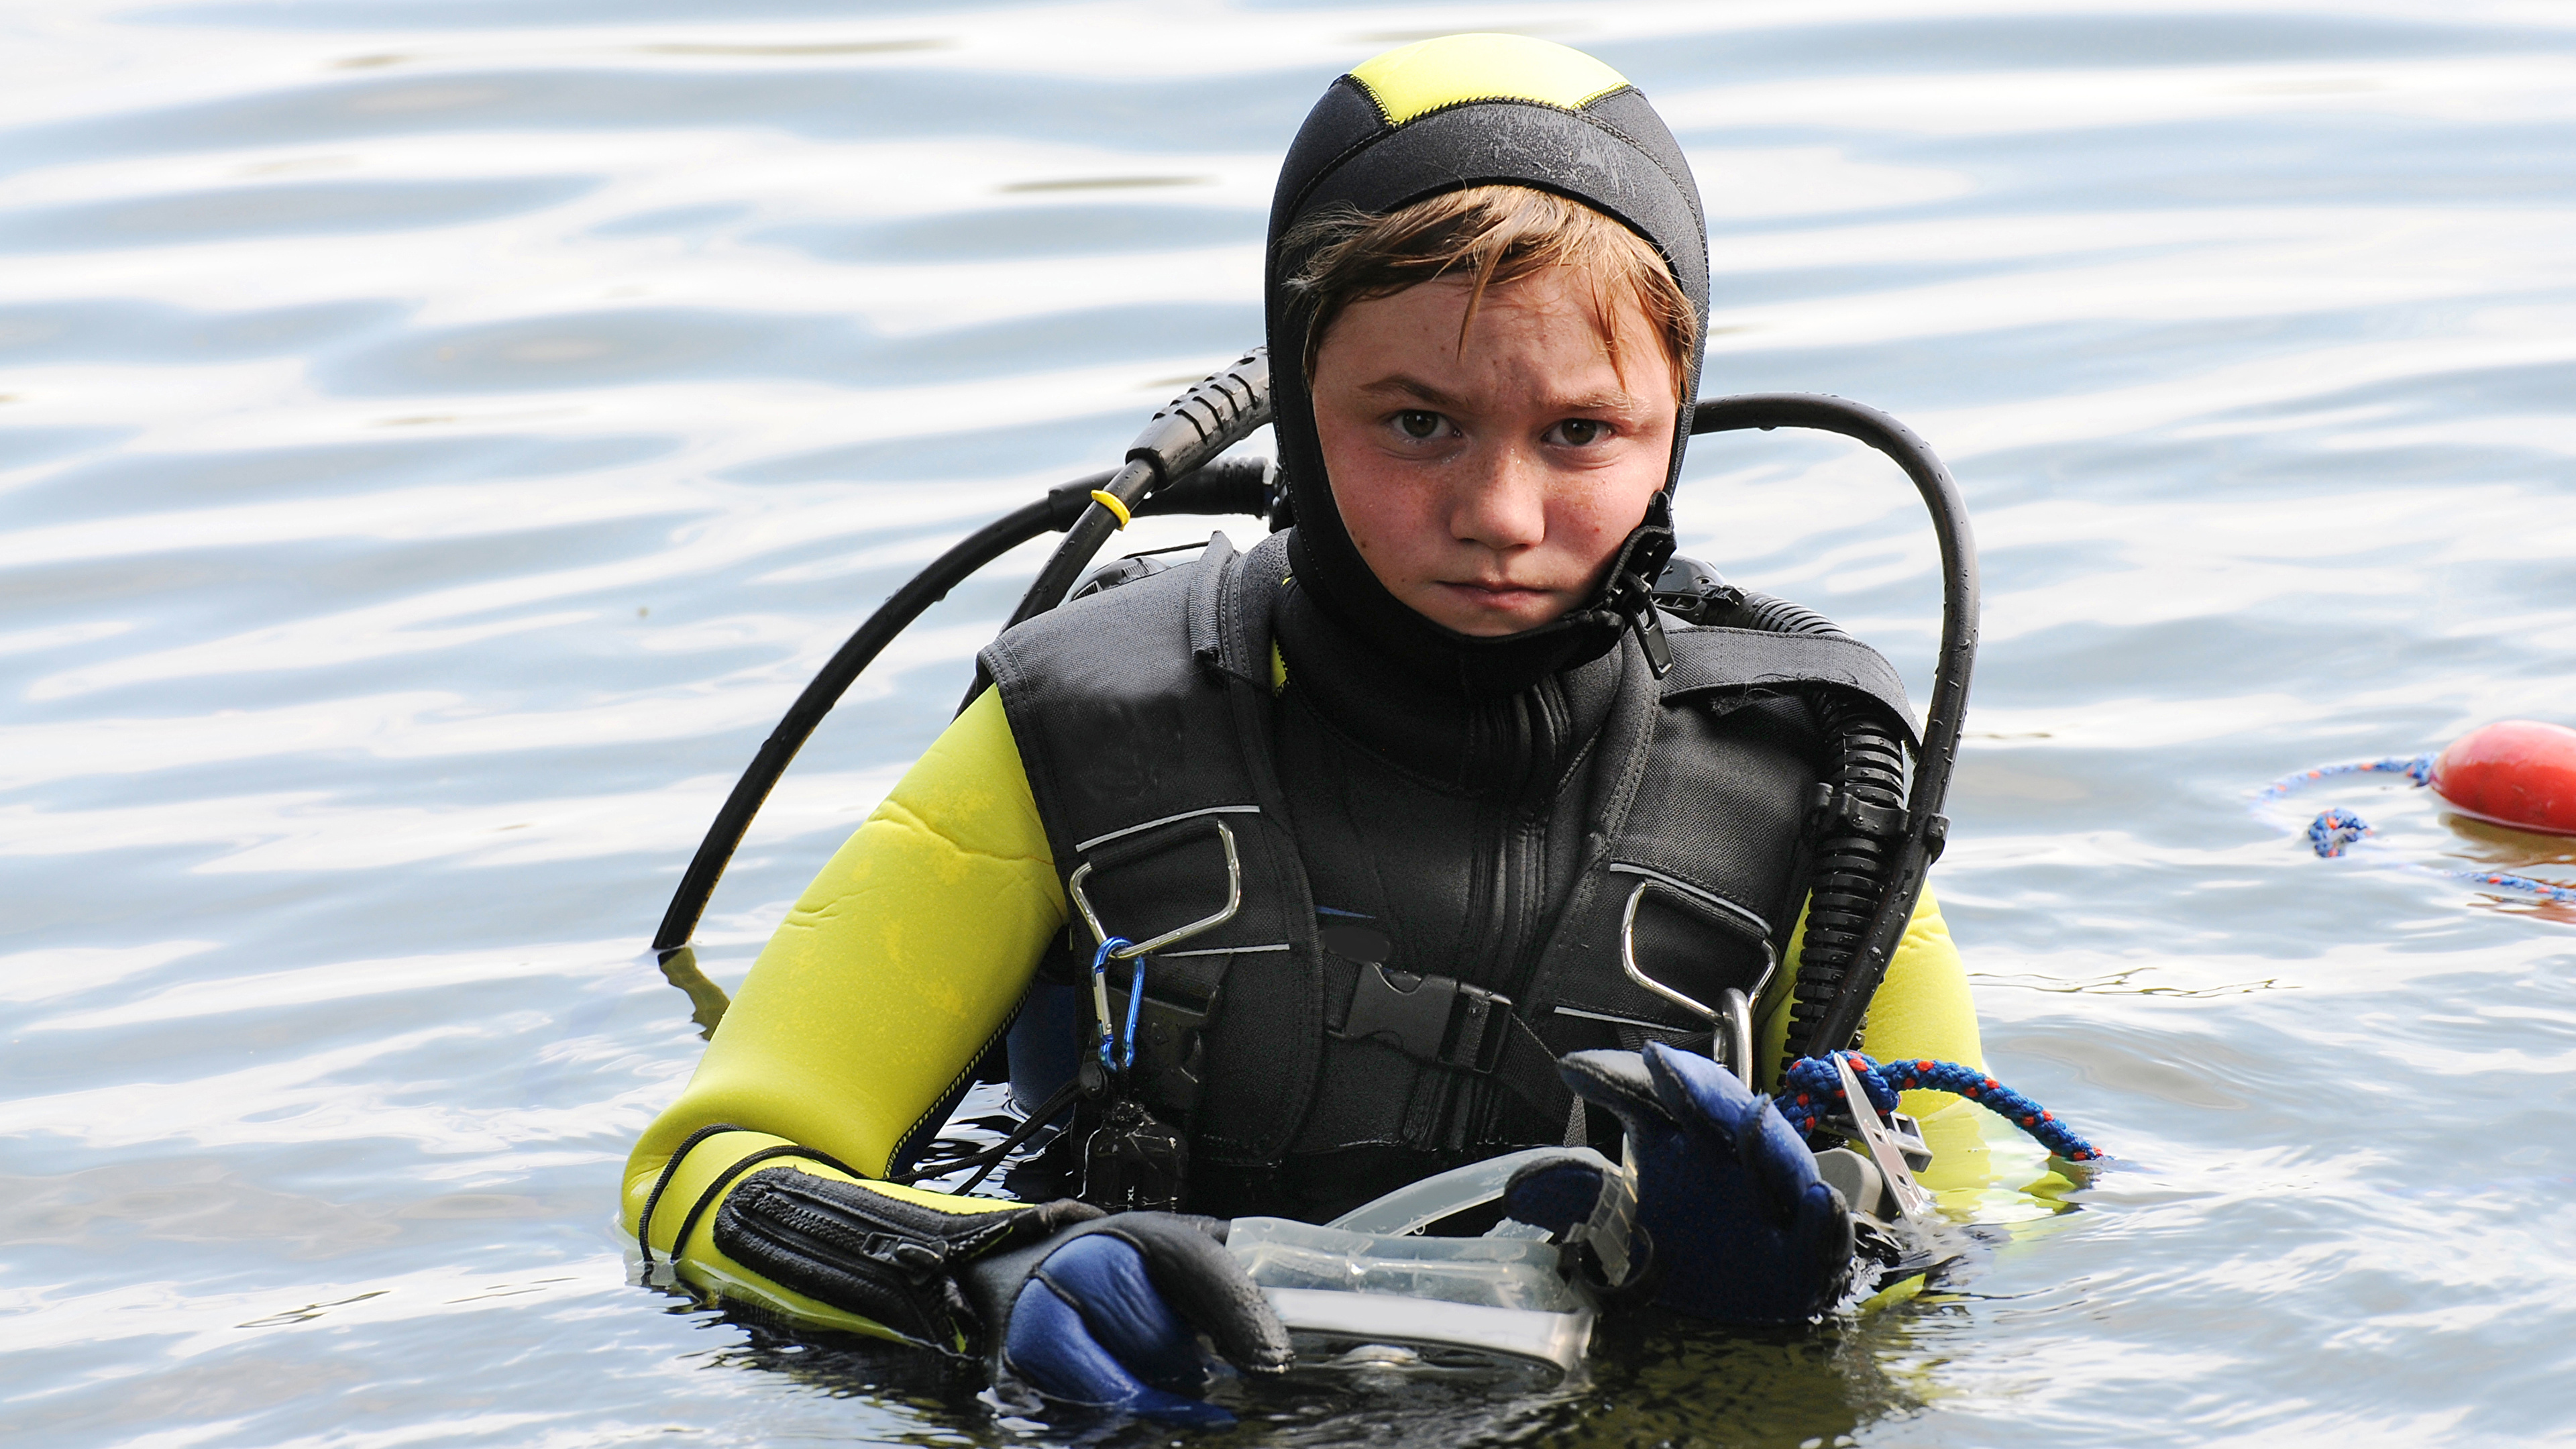 壁紙 3840x2160 水 ダイビング 少年 制服 子供 ダウンロード 写真